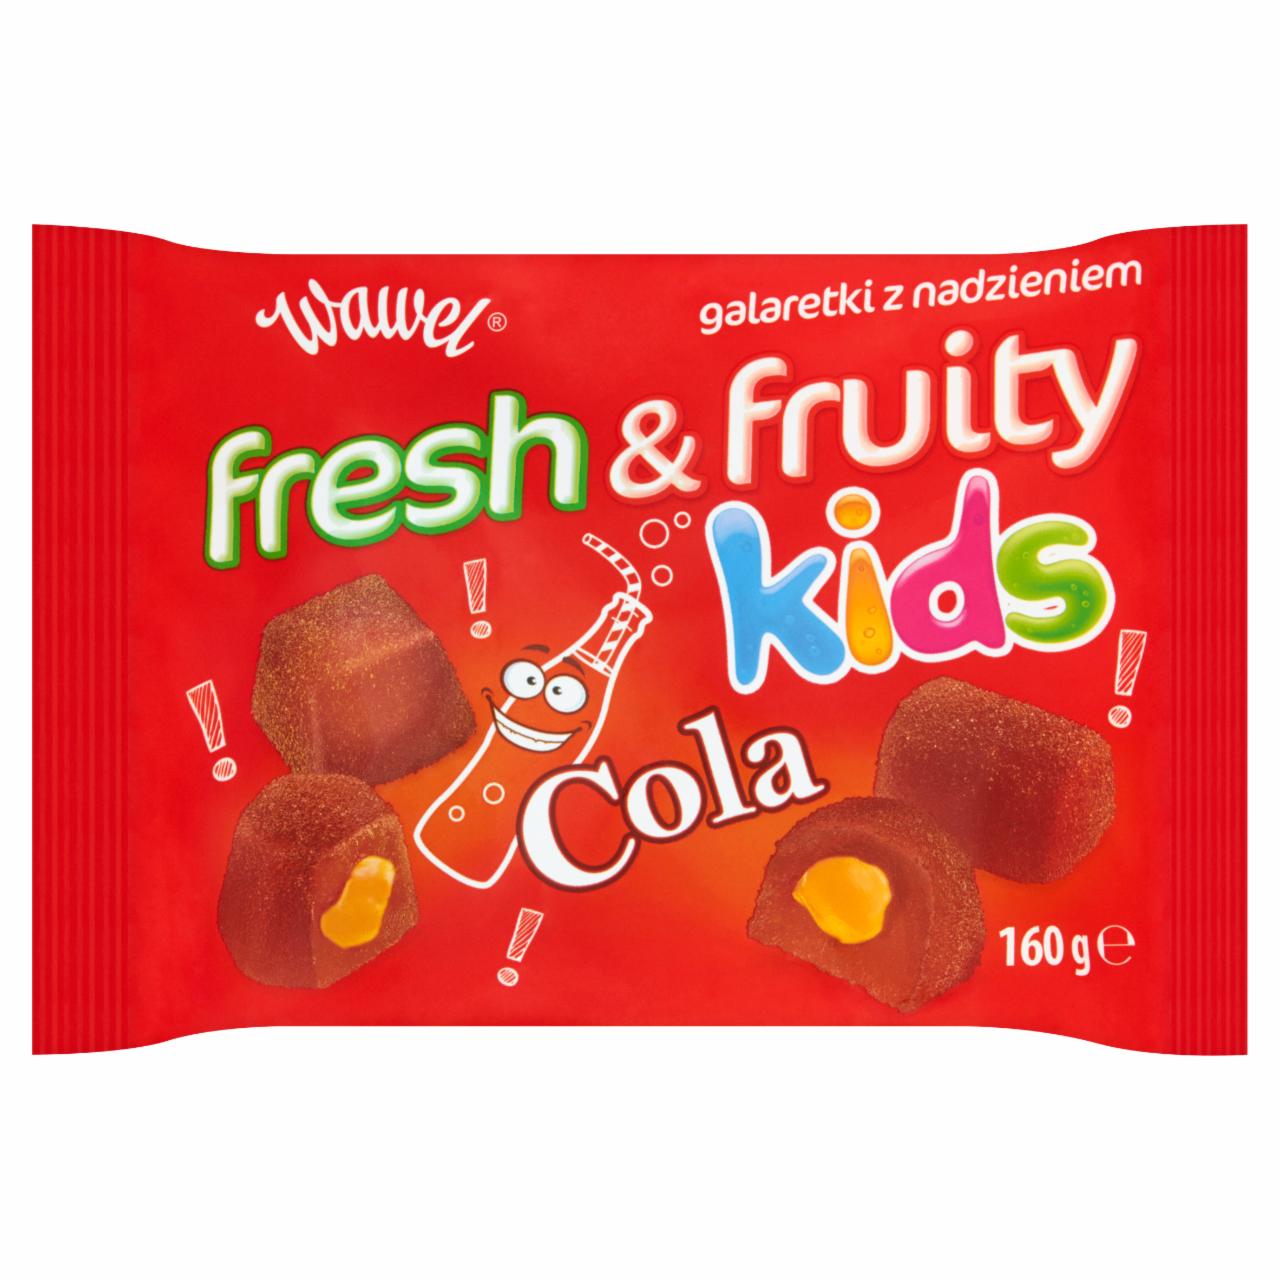 Zdjęcia - Wawel Fresh & Fruity Kids Cola Galaretki z nadzieniem 160 g